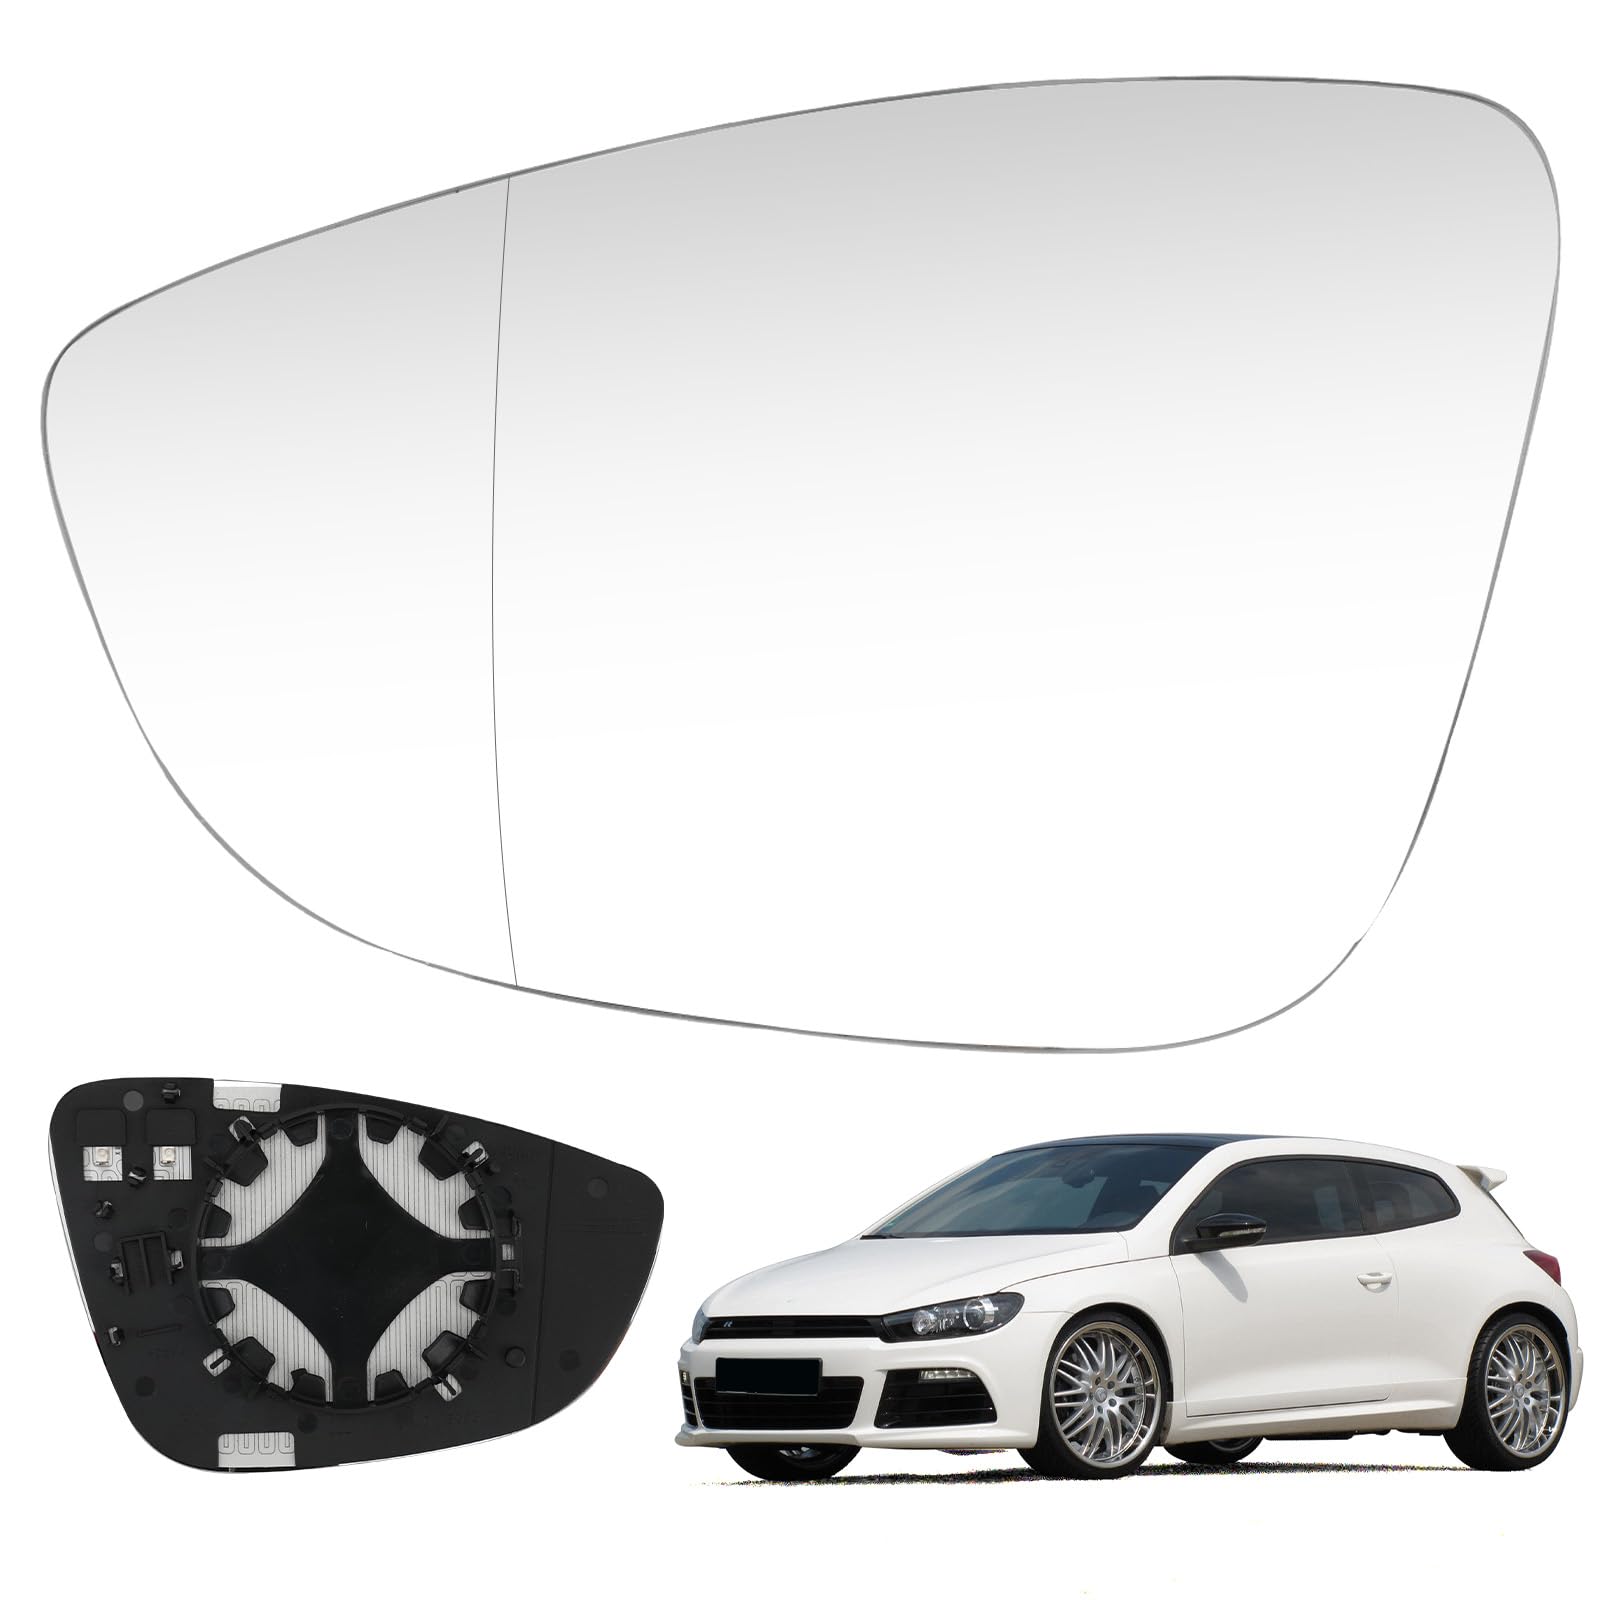 Spiegelglas kompatibel mit VW Scirocco MK3 2008-2017, PASSAT B7 2010-2014, beheizte Flügelseite Glasspiegel Left von DriSubt